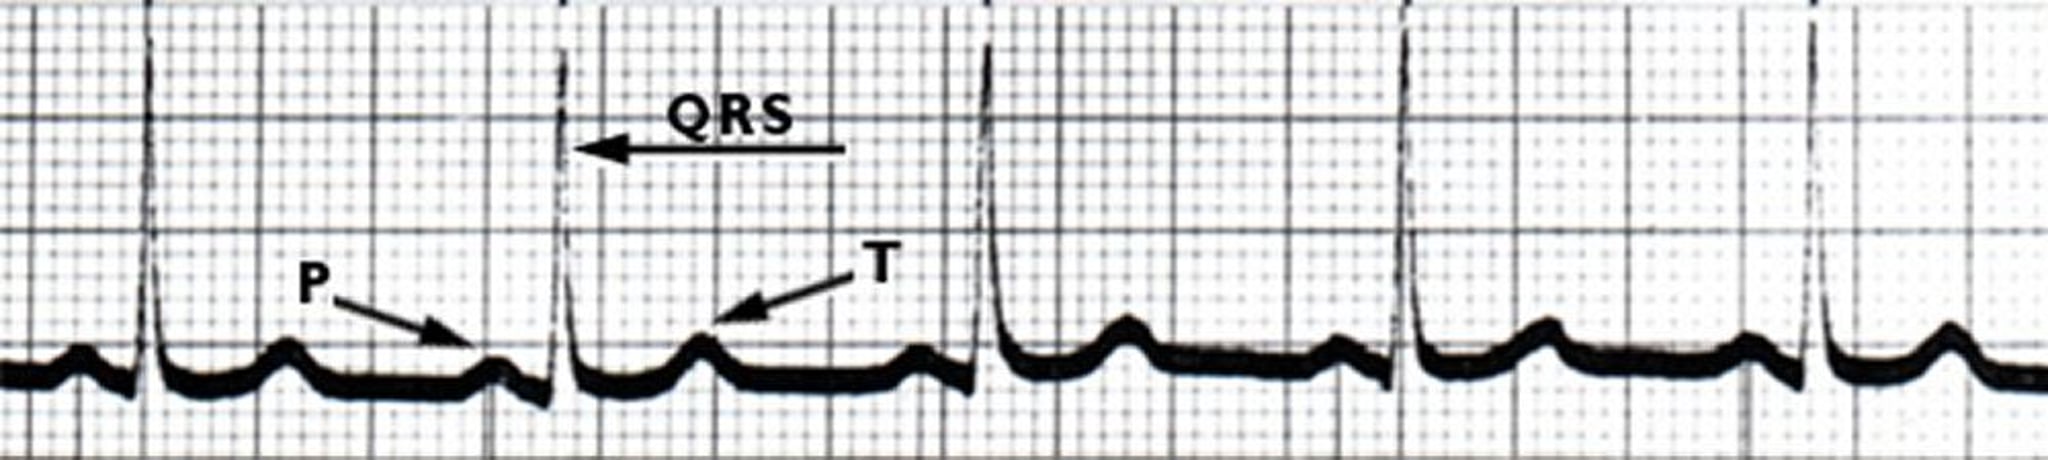 ECG: Batimentos cardíacos normais